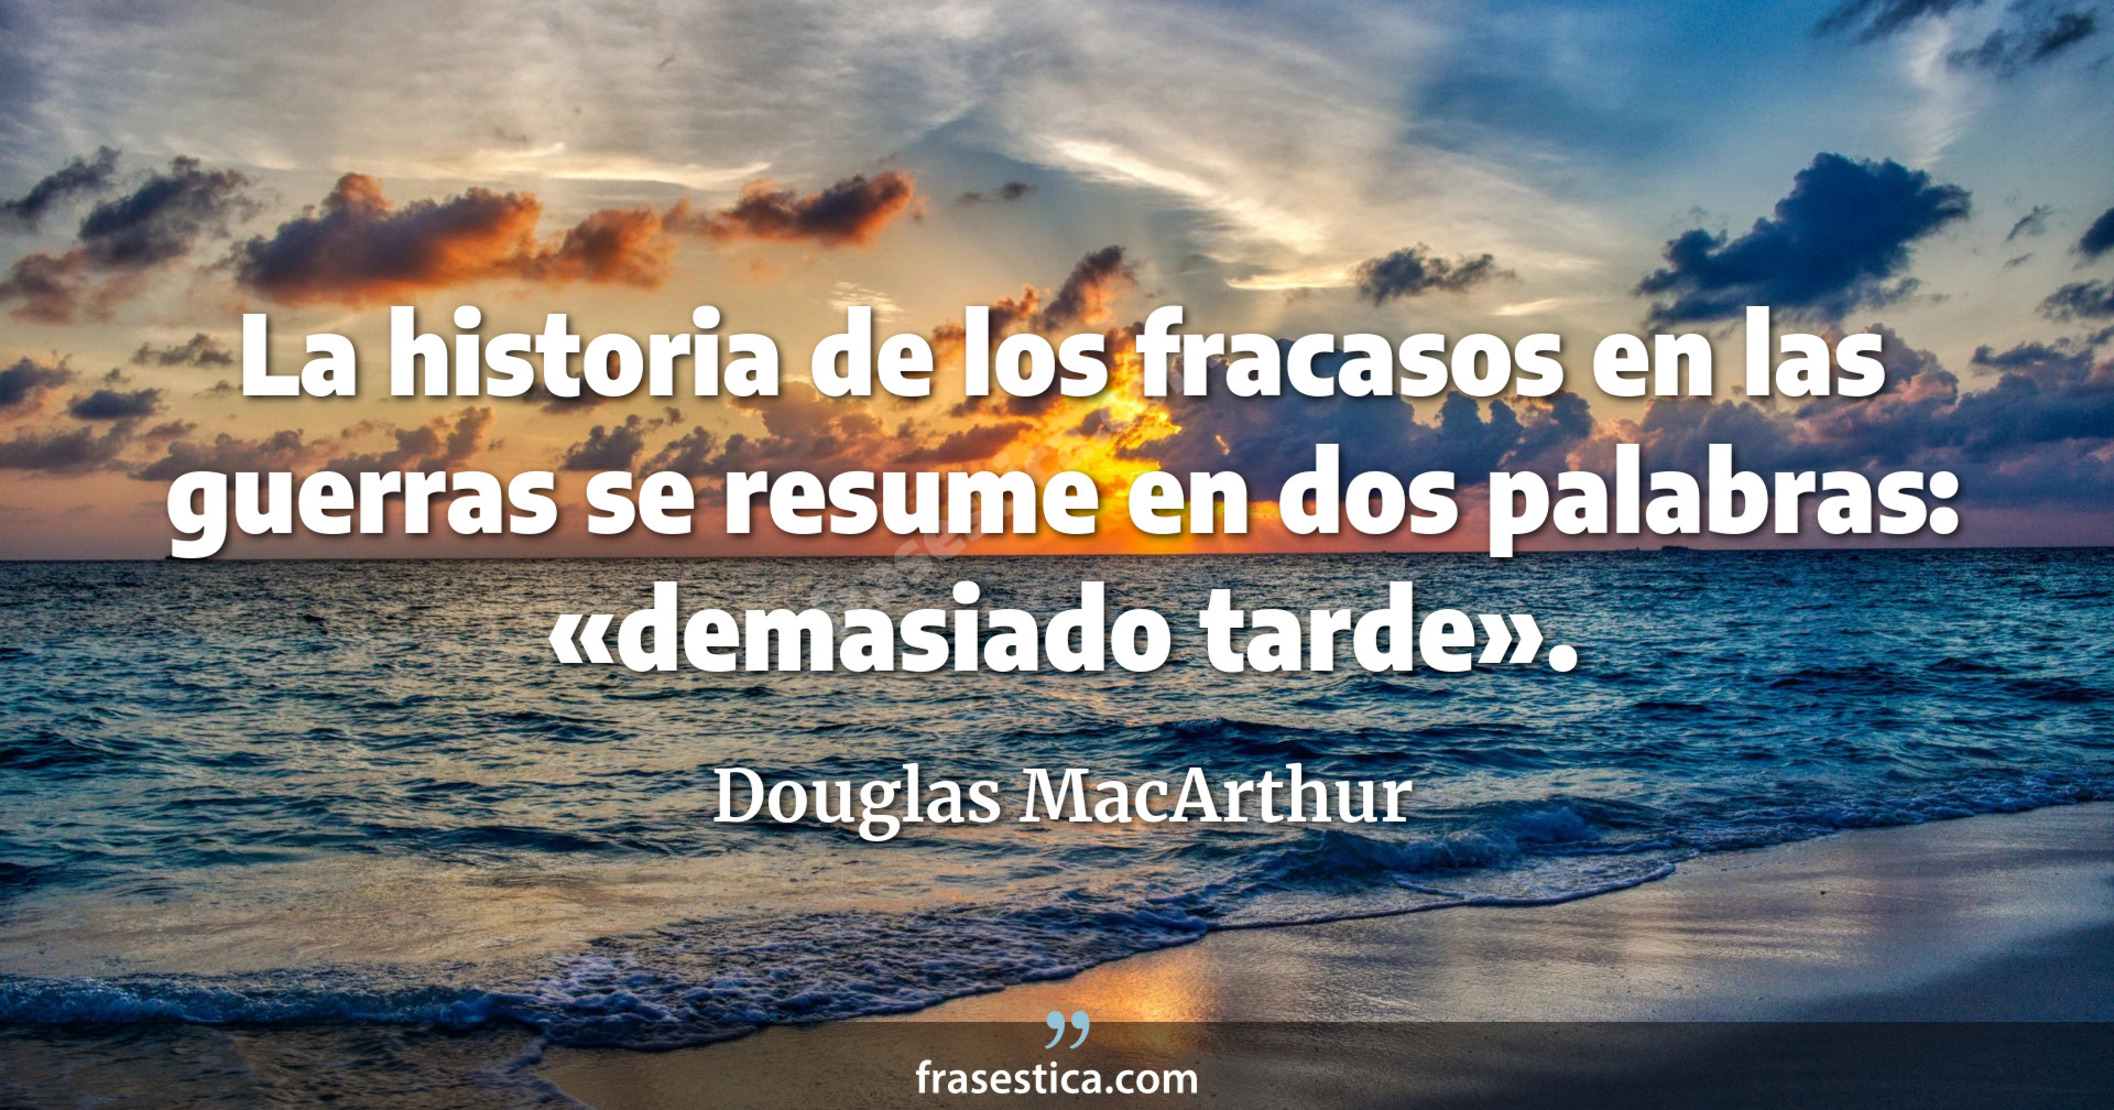 La historia de los fracasos en las guerras se resume en dos palabras: «demasiado tarde». - Douglas MacArthur